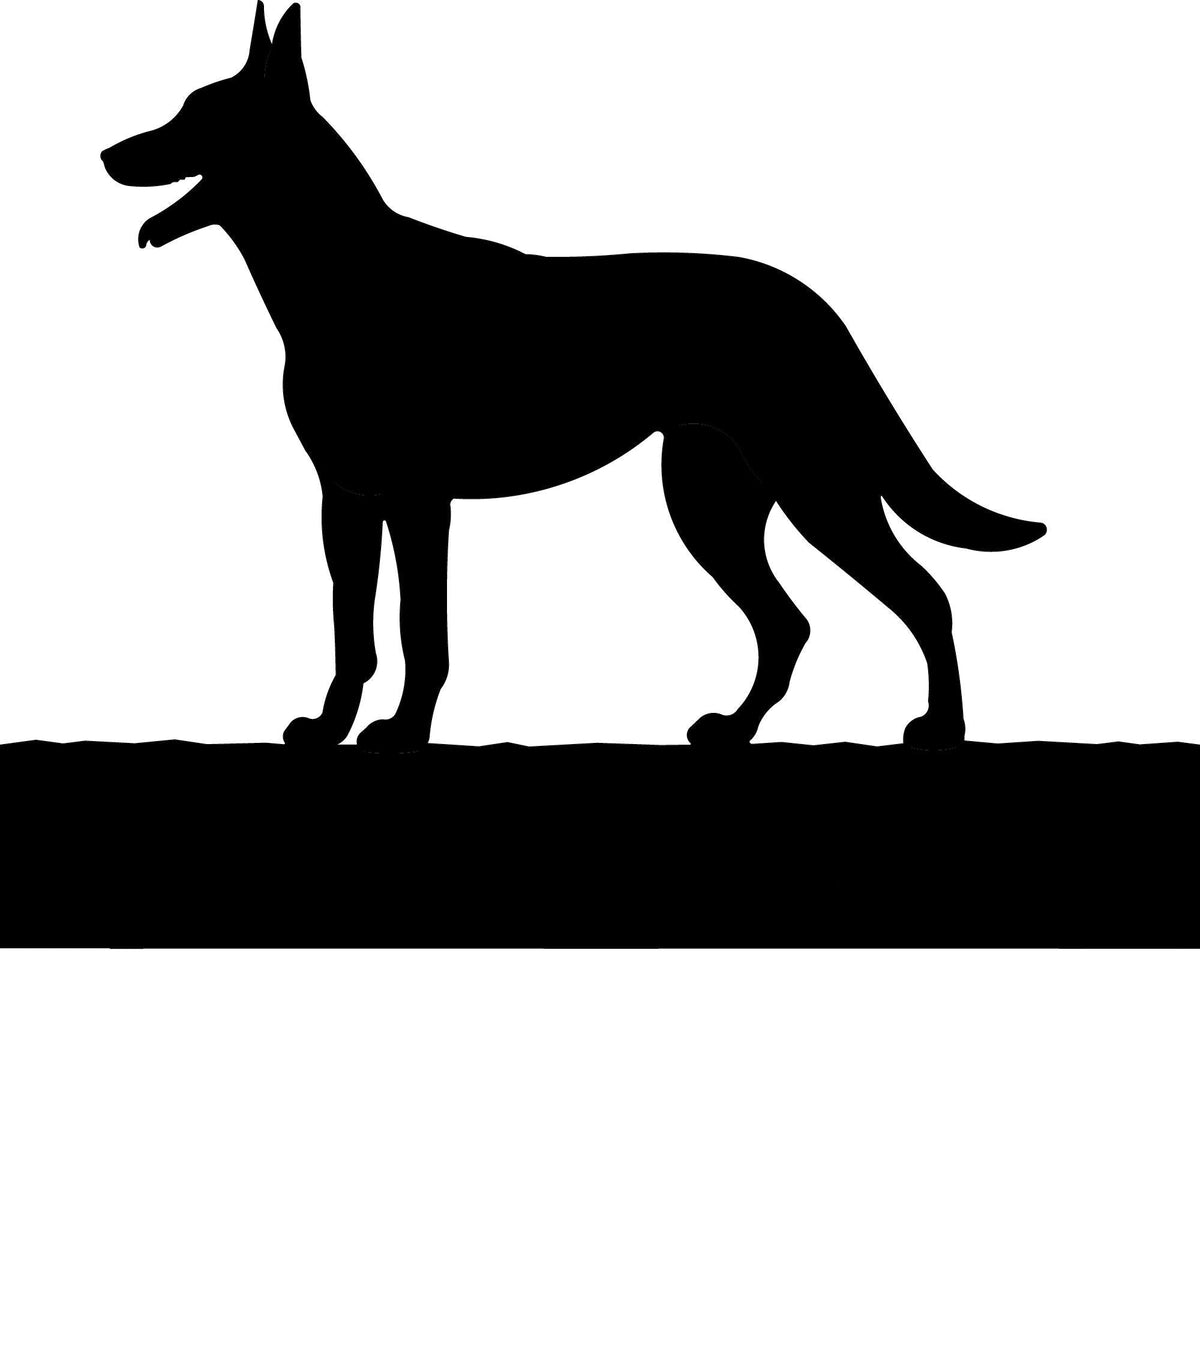 Belgian Malinois dog address stake